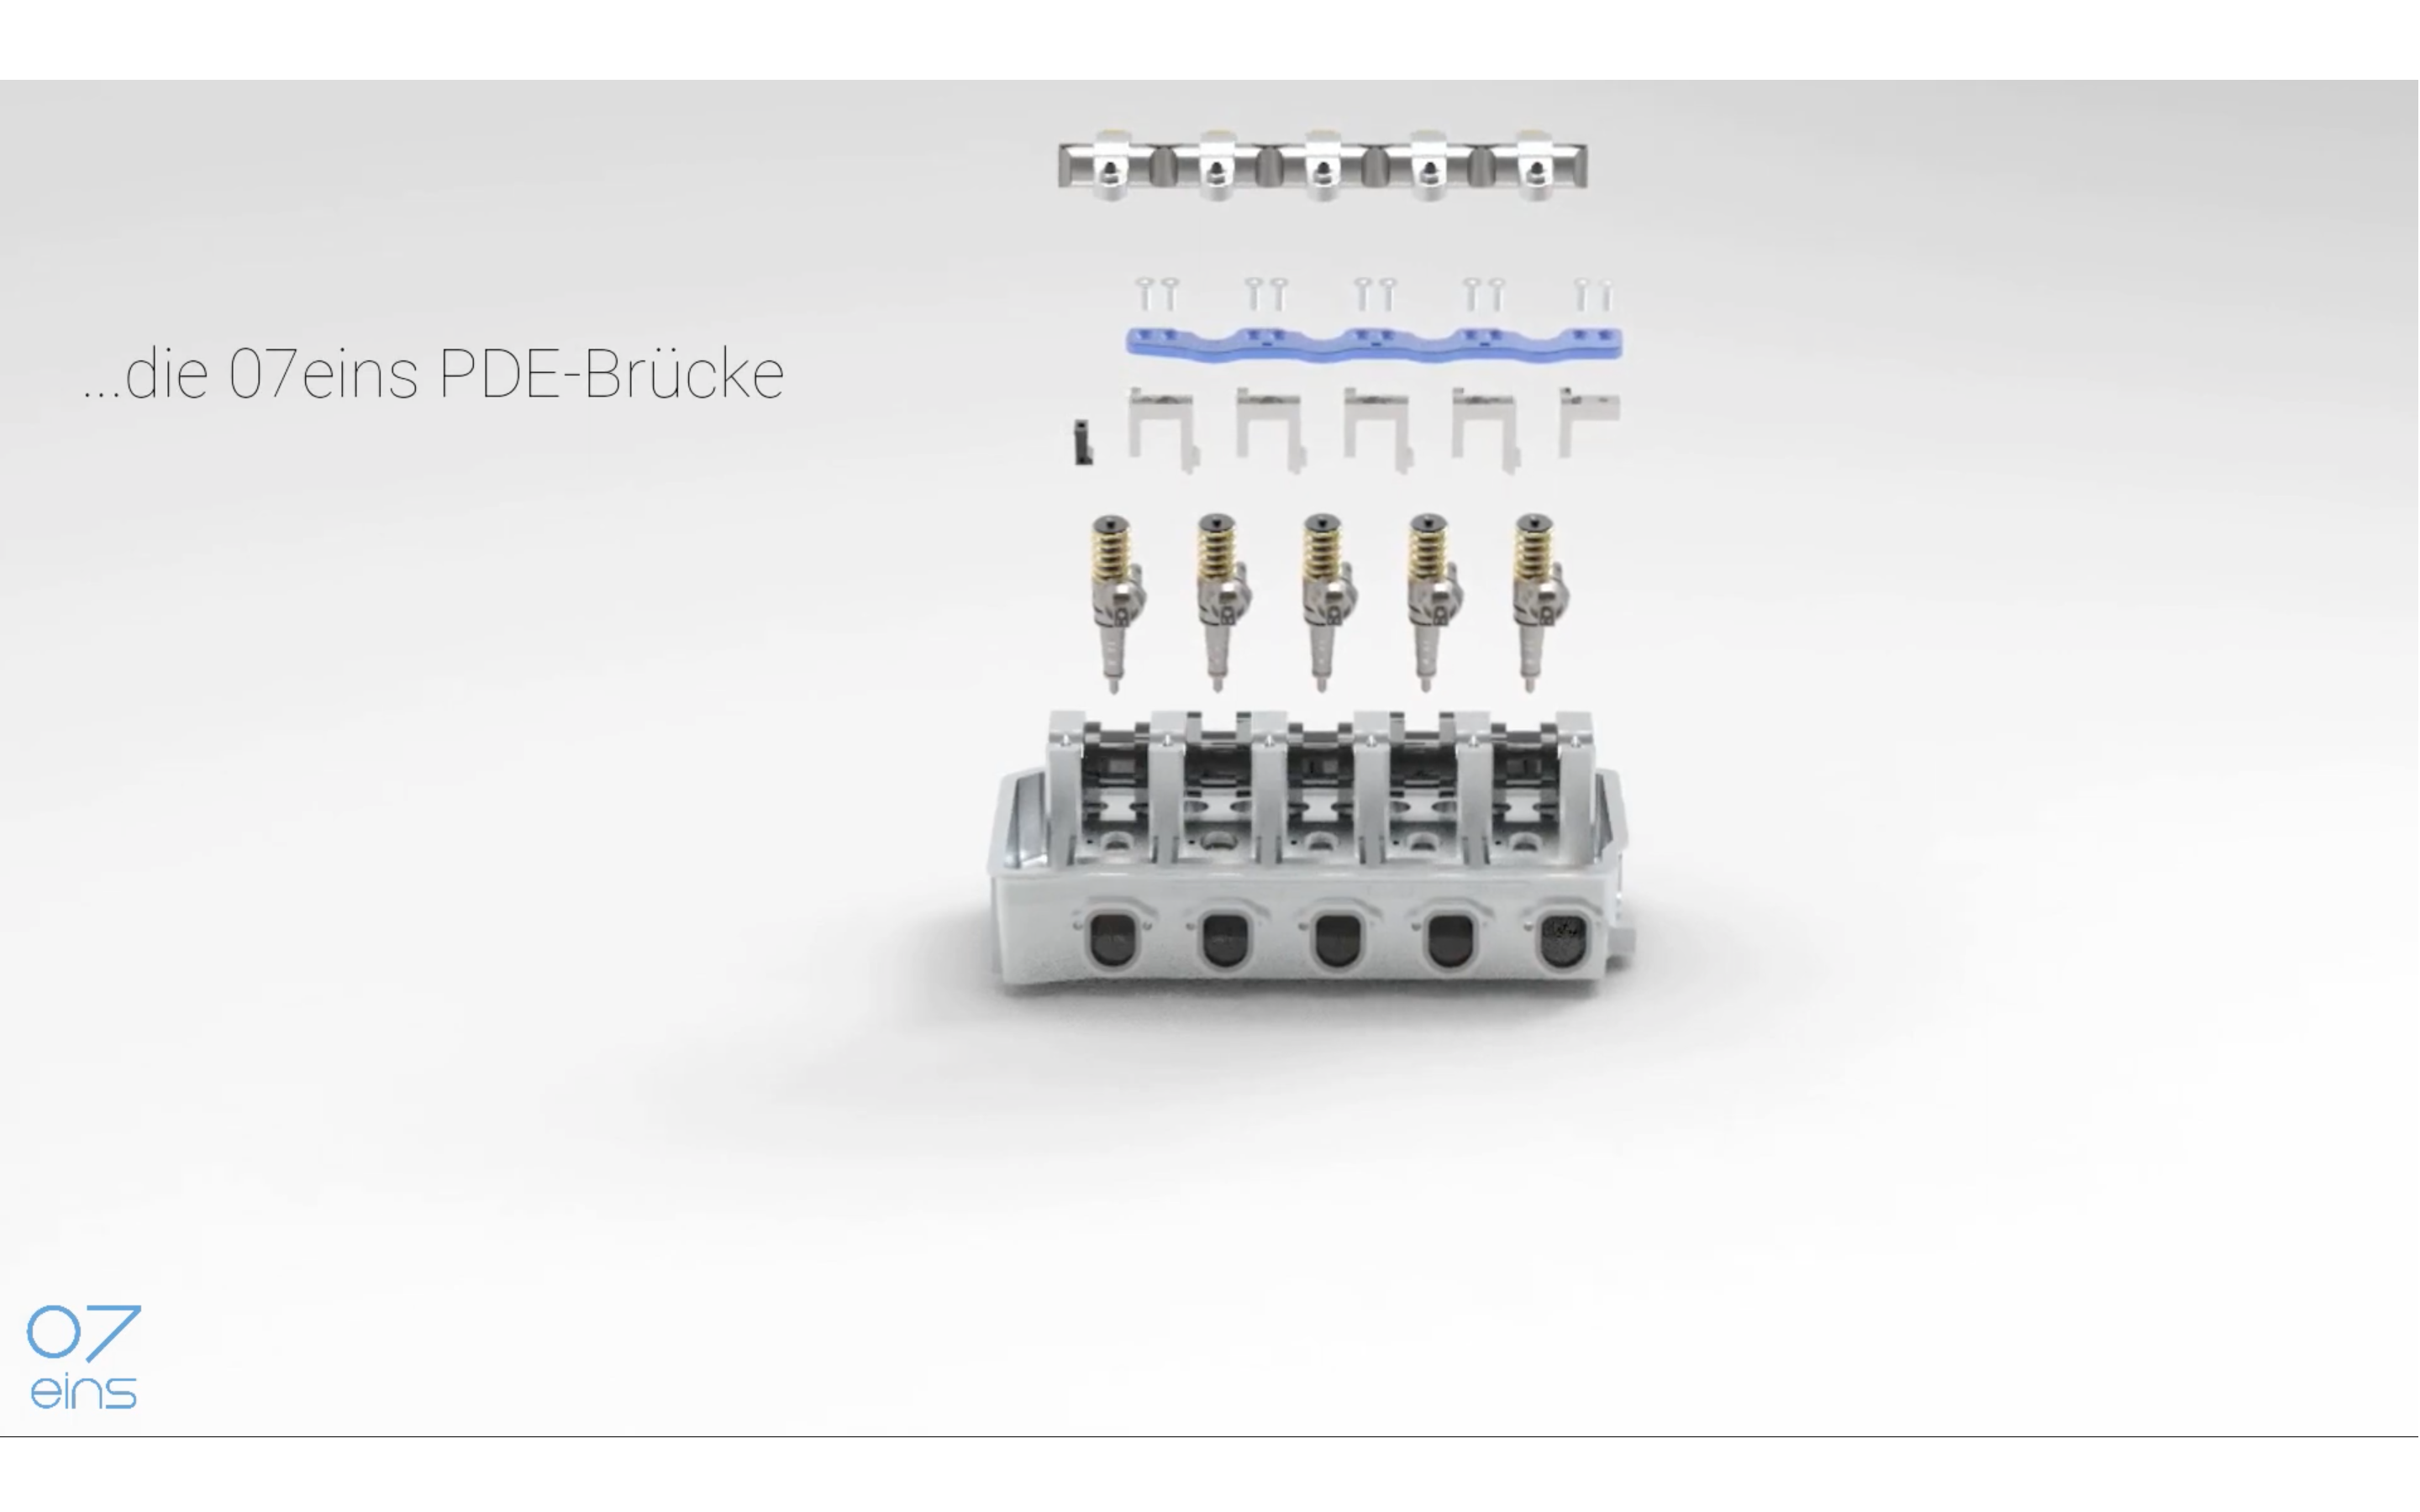 Funktionsprinzip der PDE-Brücke (Pumpe-Düse-Brücke) zur Vermeidung von Zylinderkopfschäden